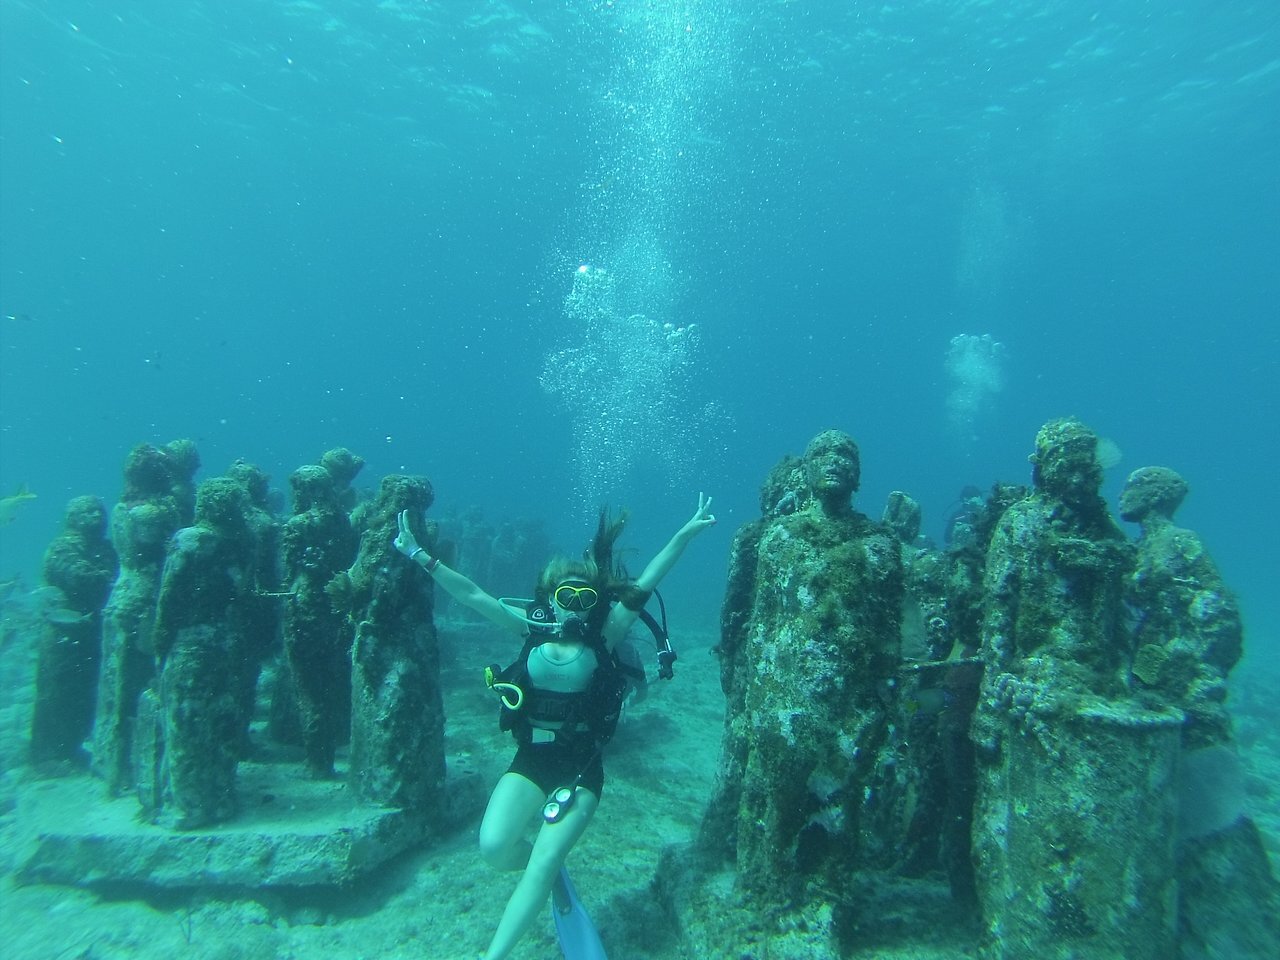 MUSA, Cancun’s remarkable underwater sculpture garden